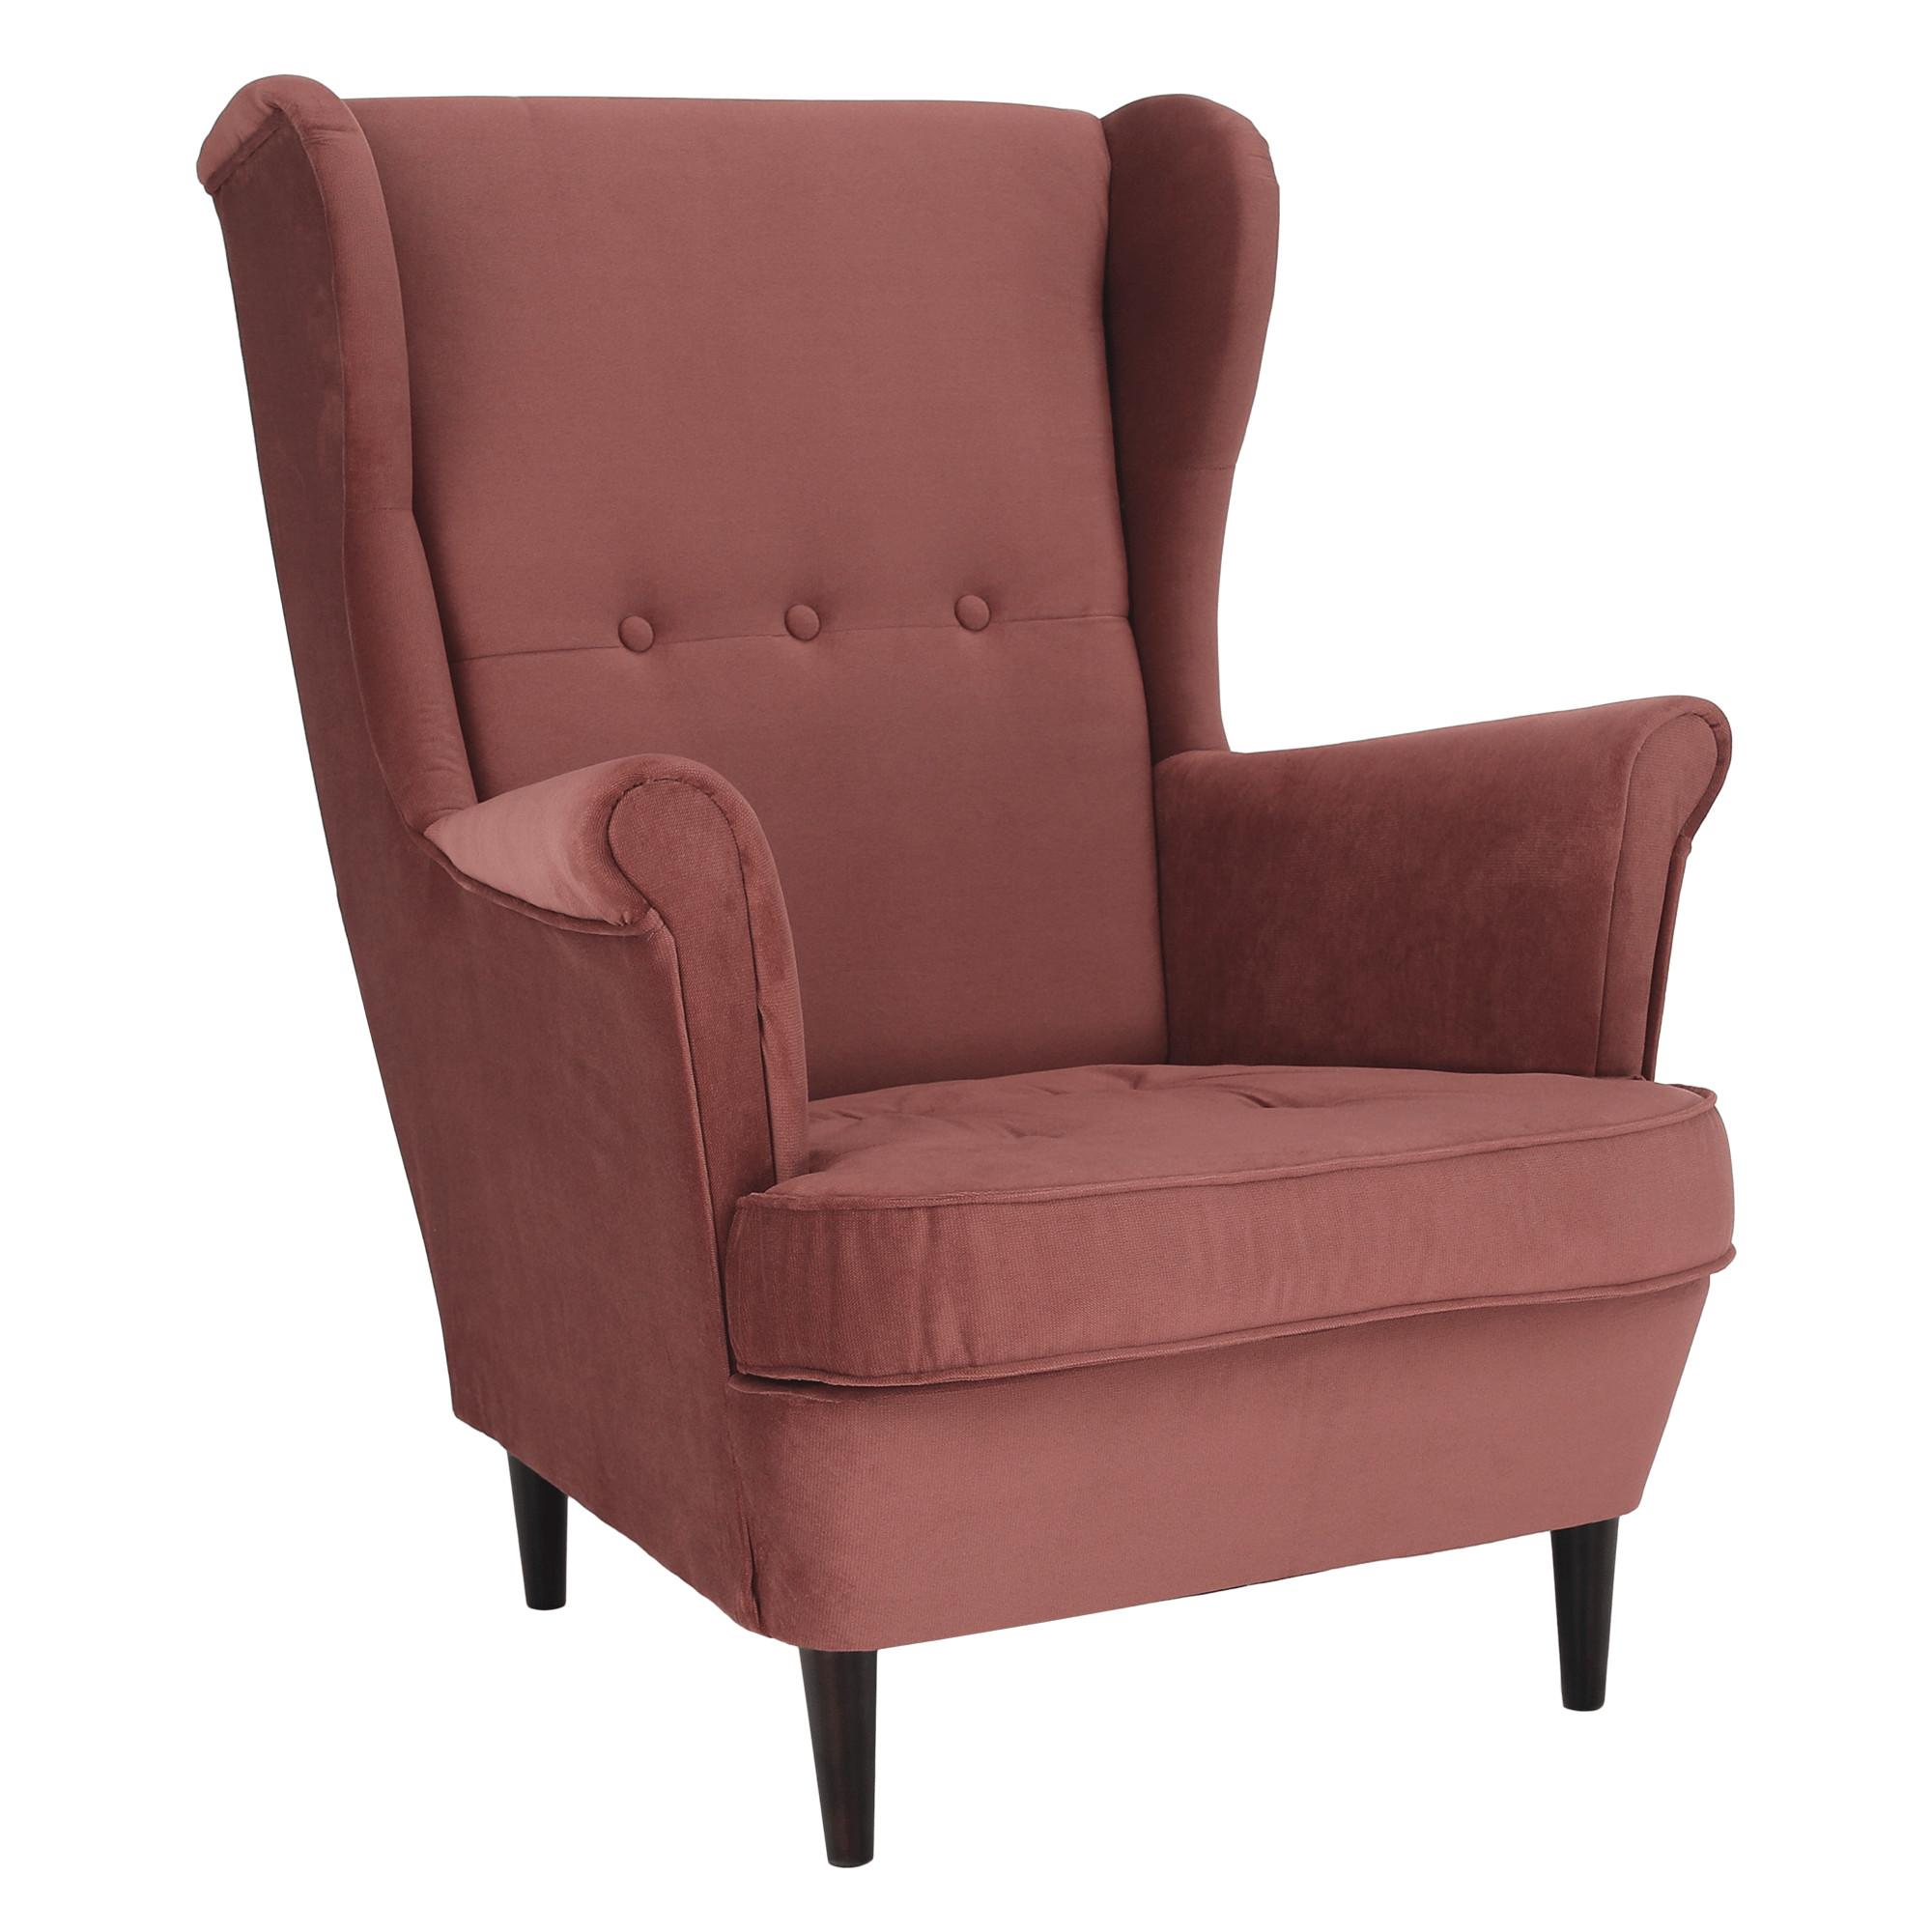 Füles fotel, vén rózsaszín/dió, RUFINO 2 NEW (TK)